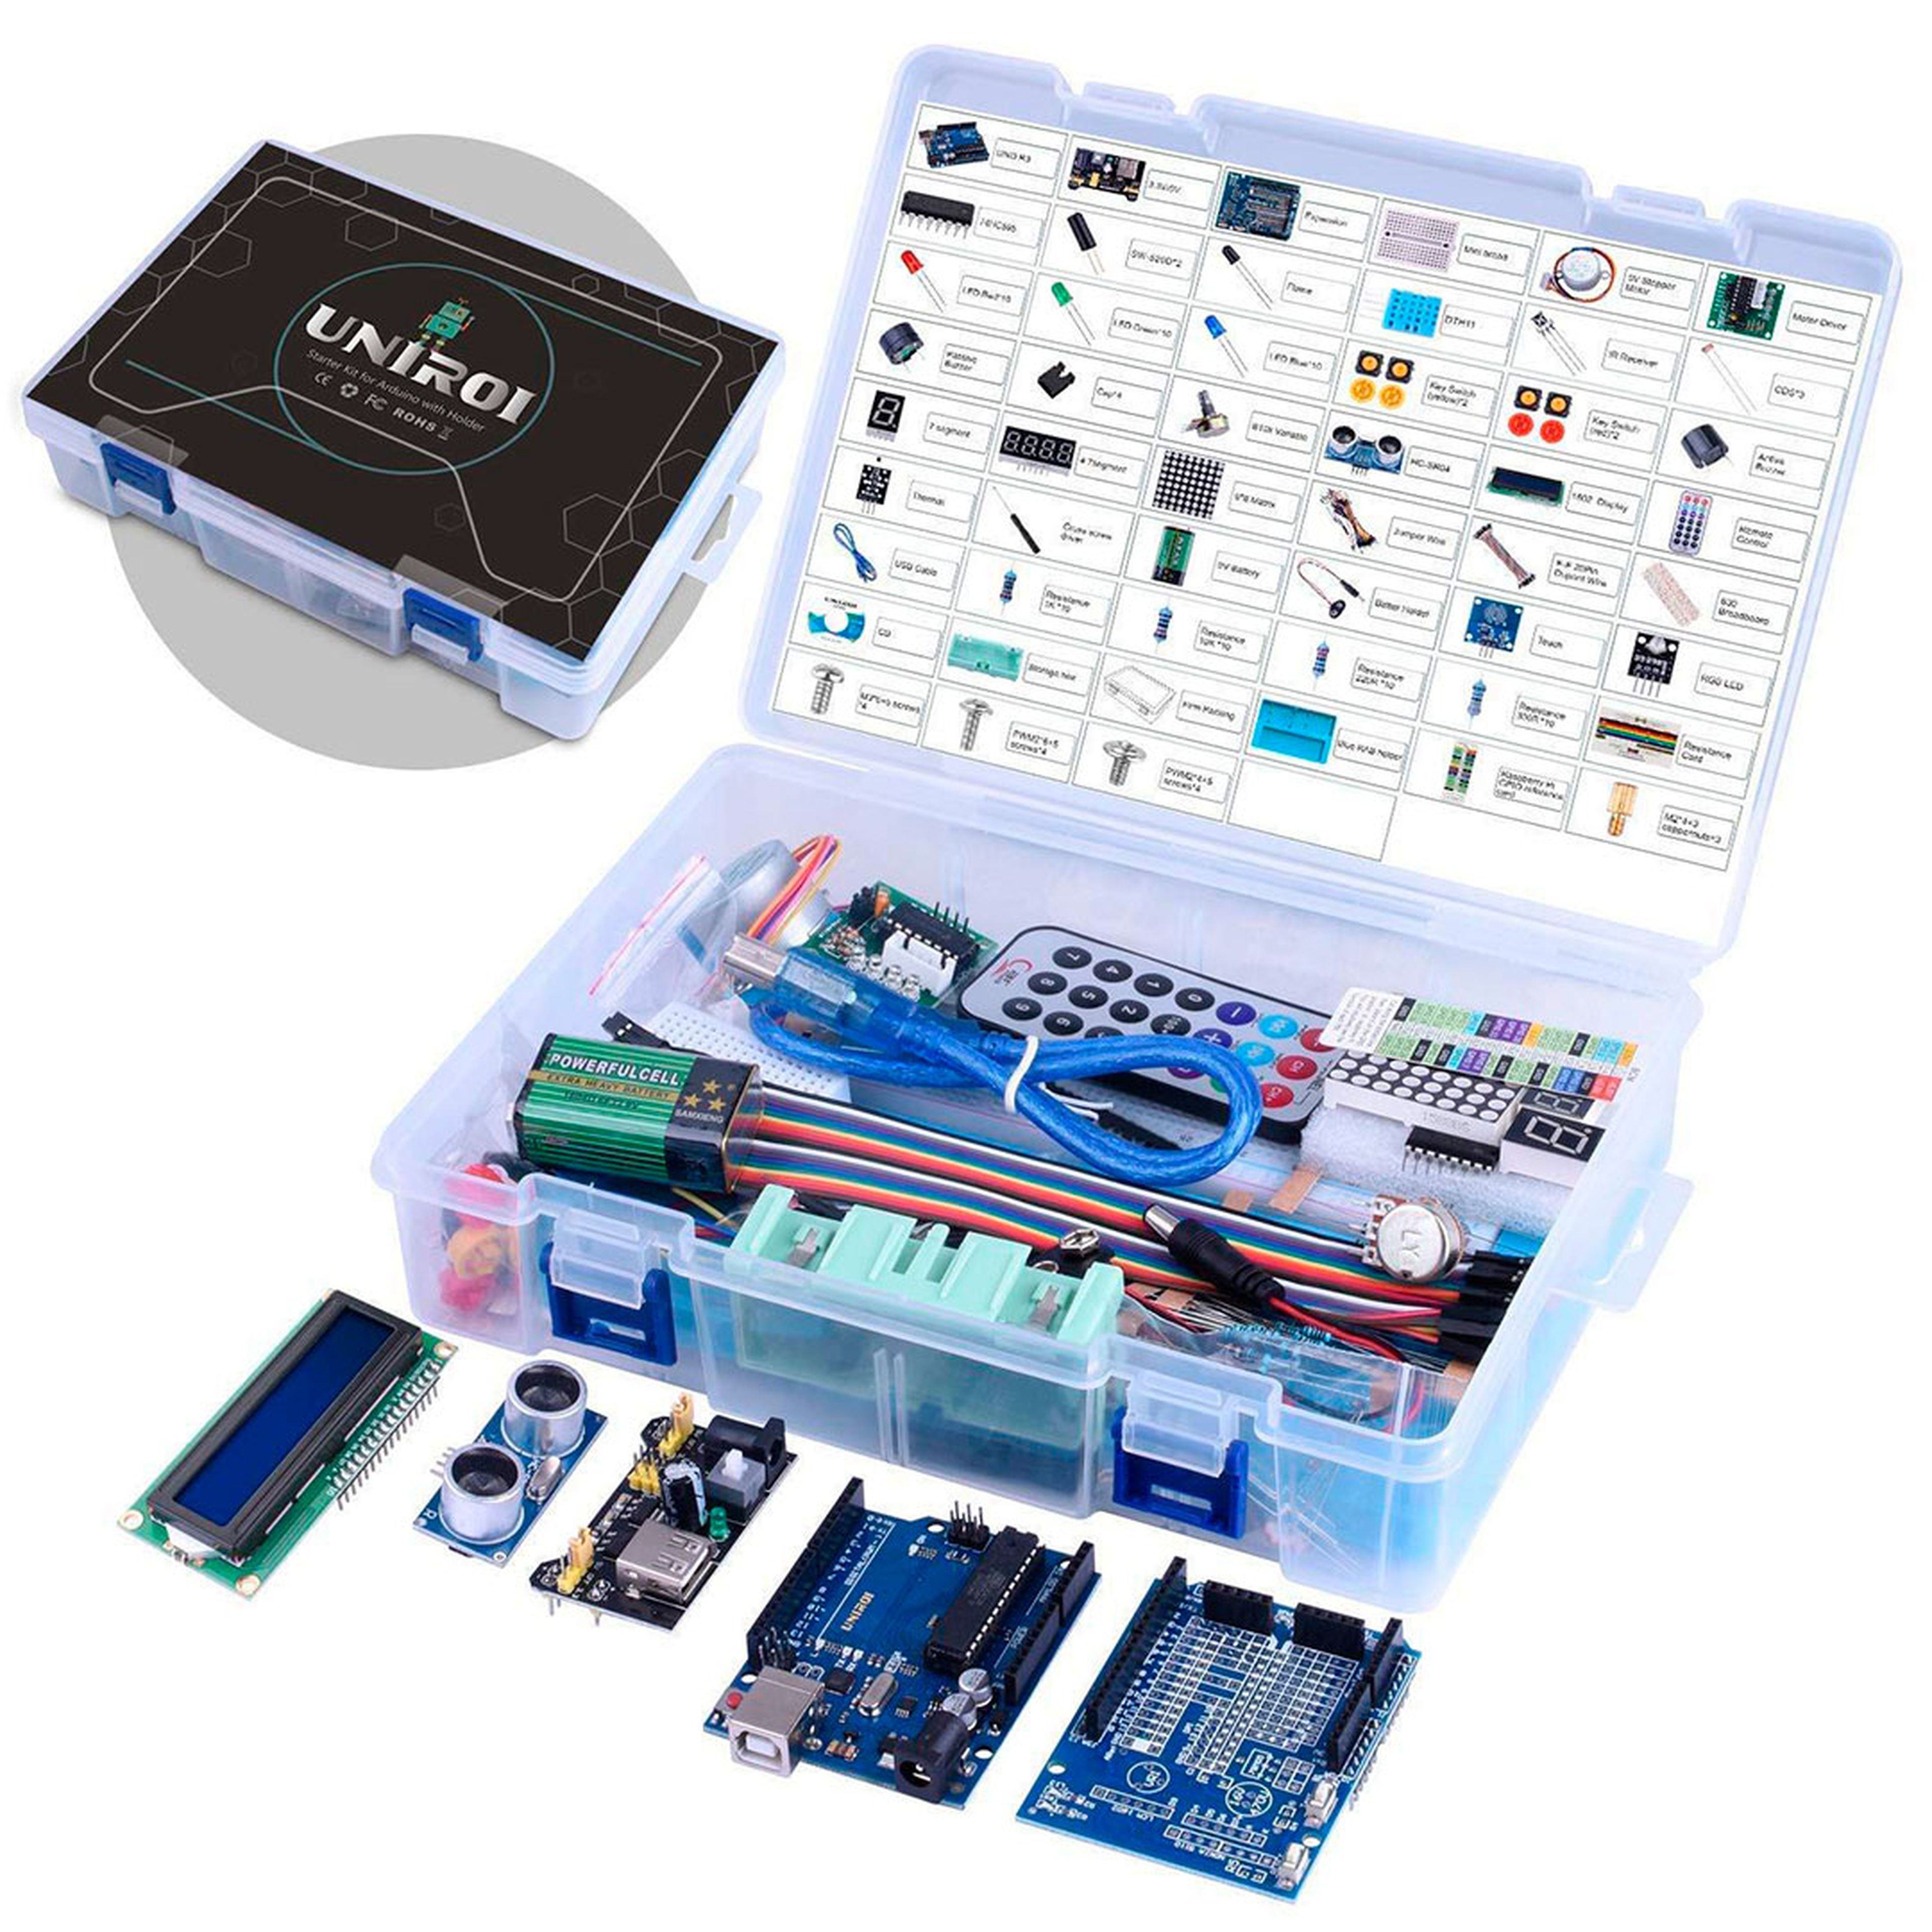 UNIROI kit de iniciación Arduino